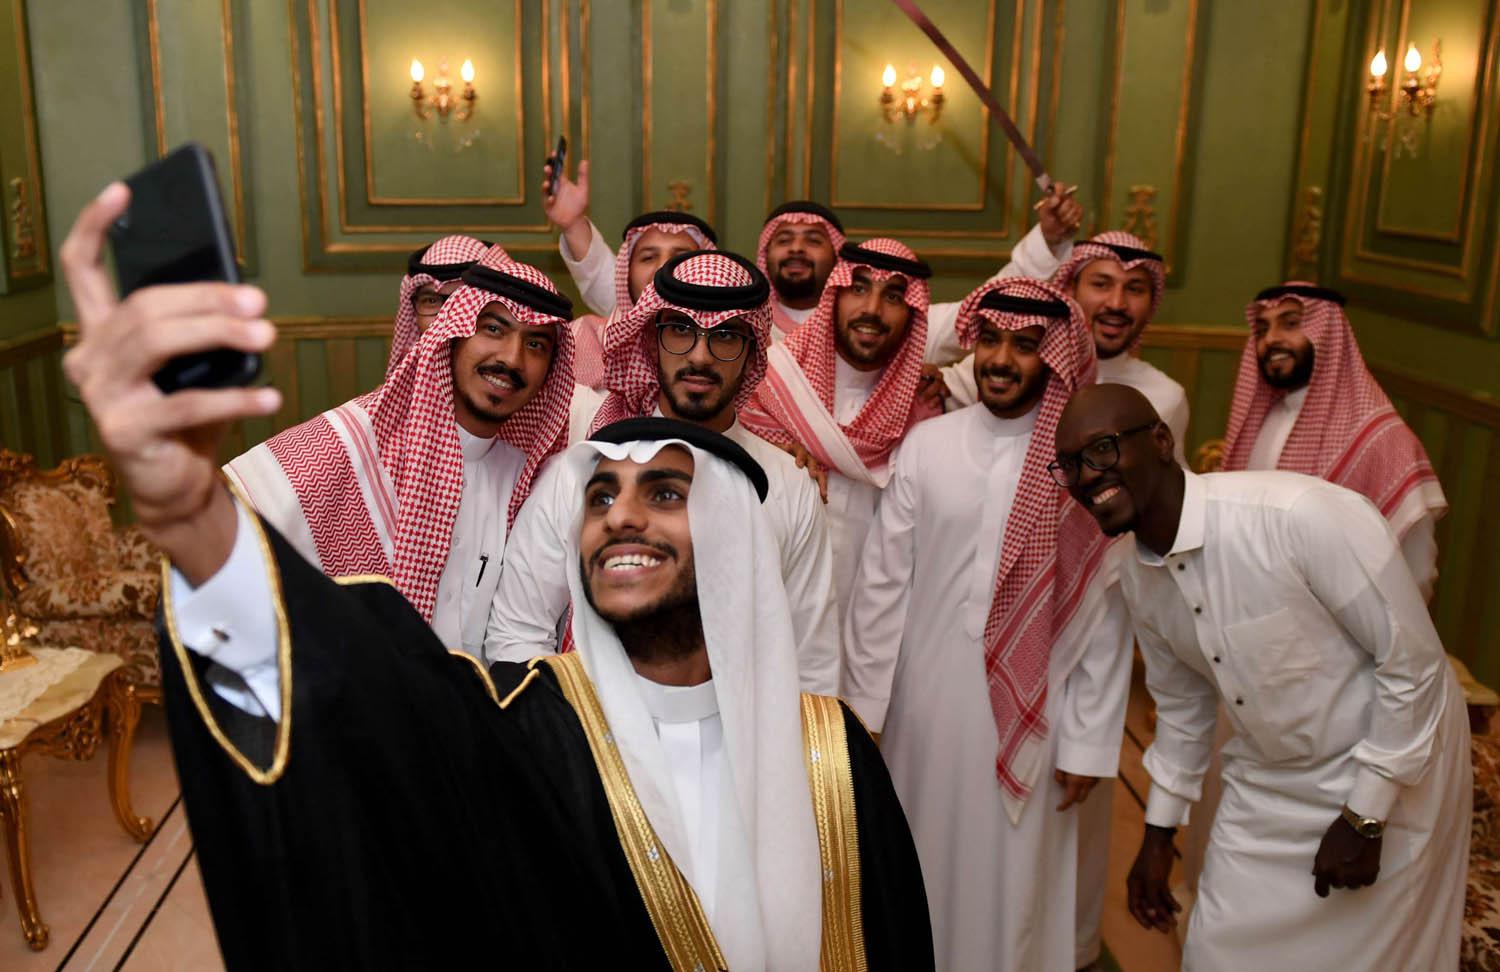 سعوديون يحتفلون بزواج صديق لهم